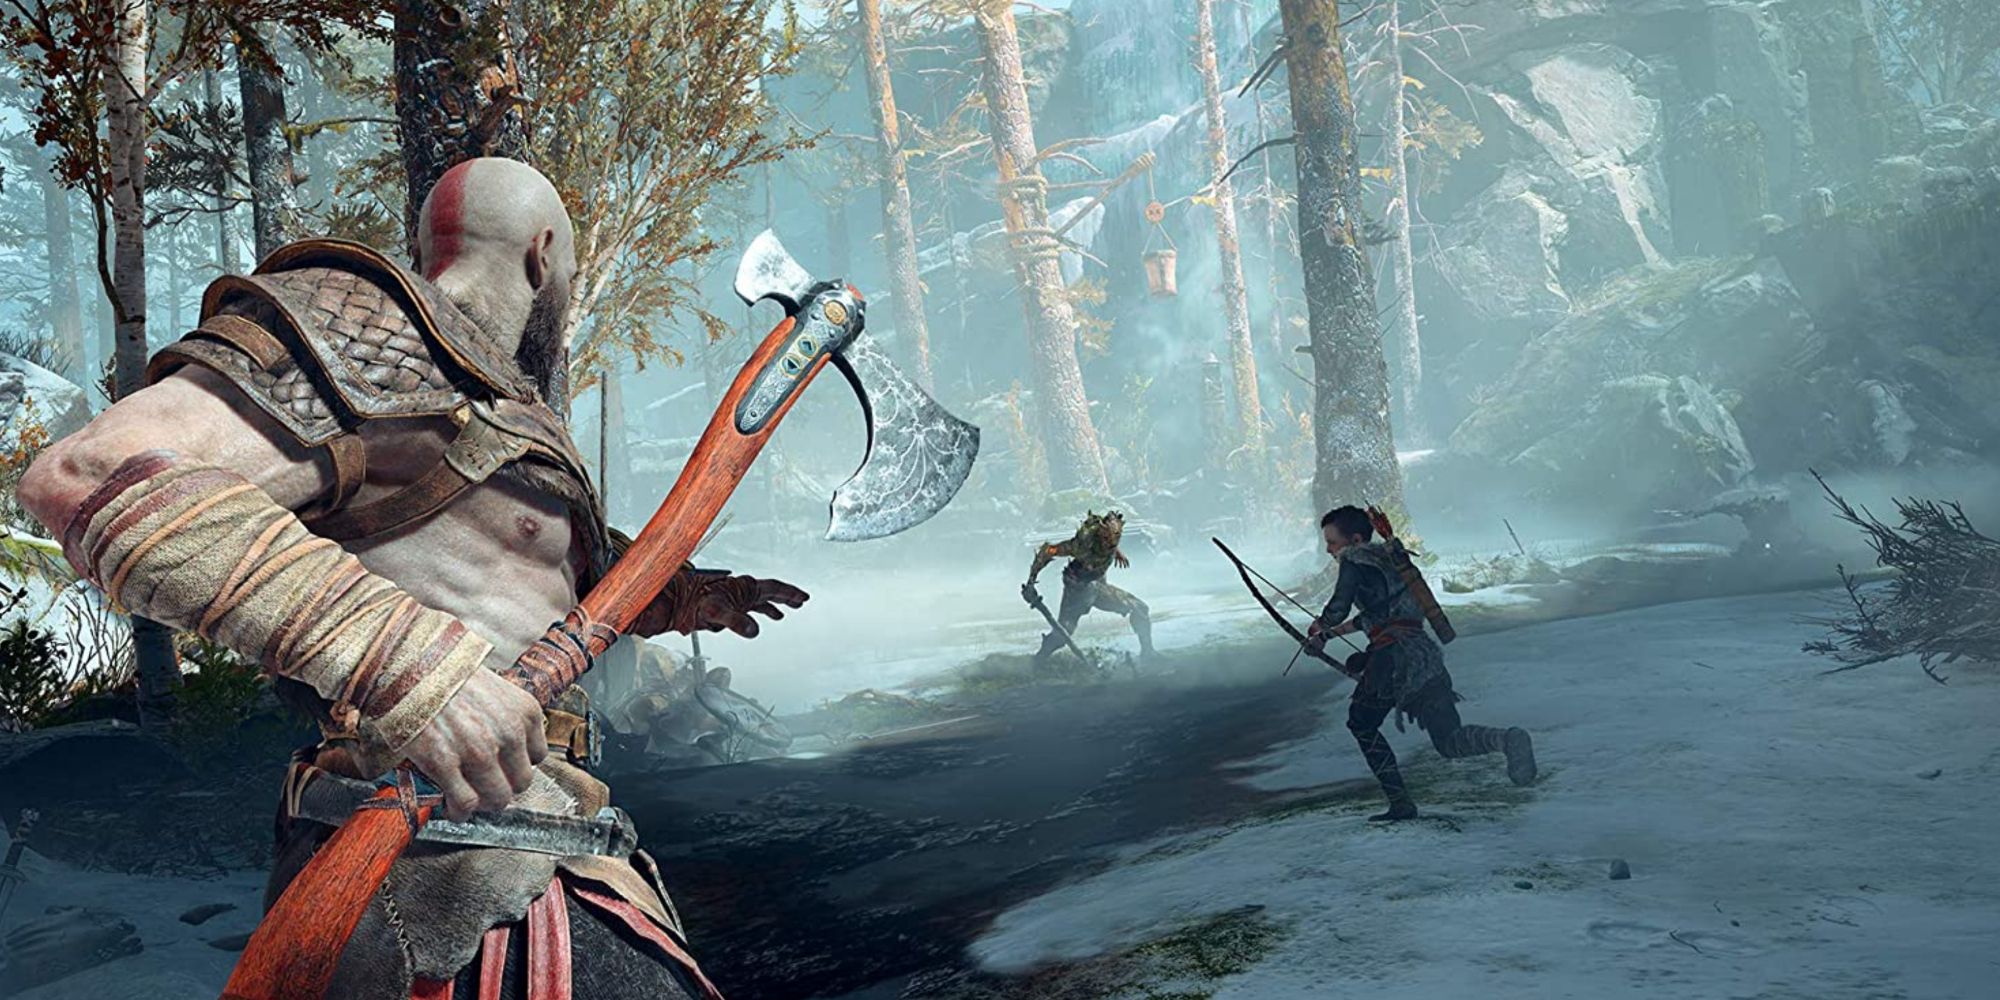 God of War Kratos carries an axe